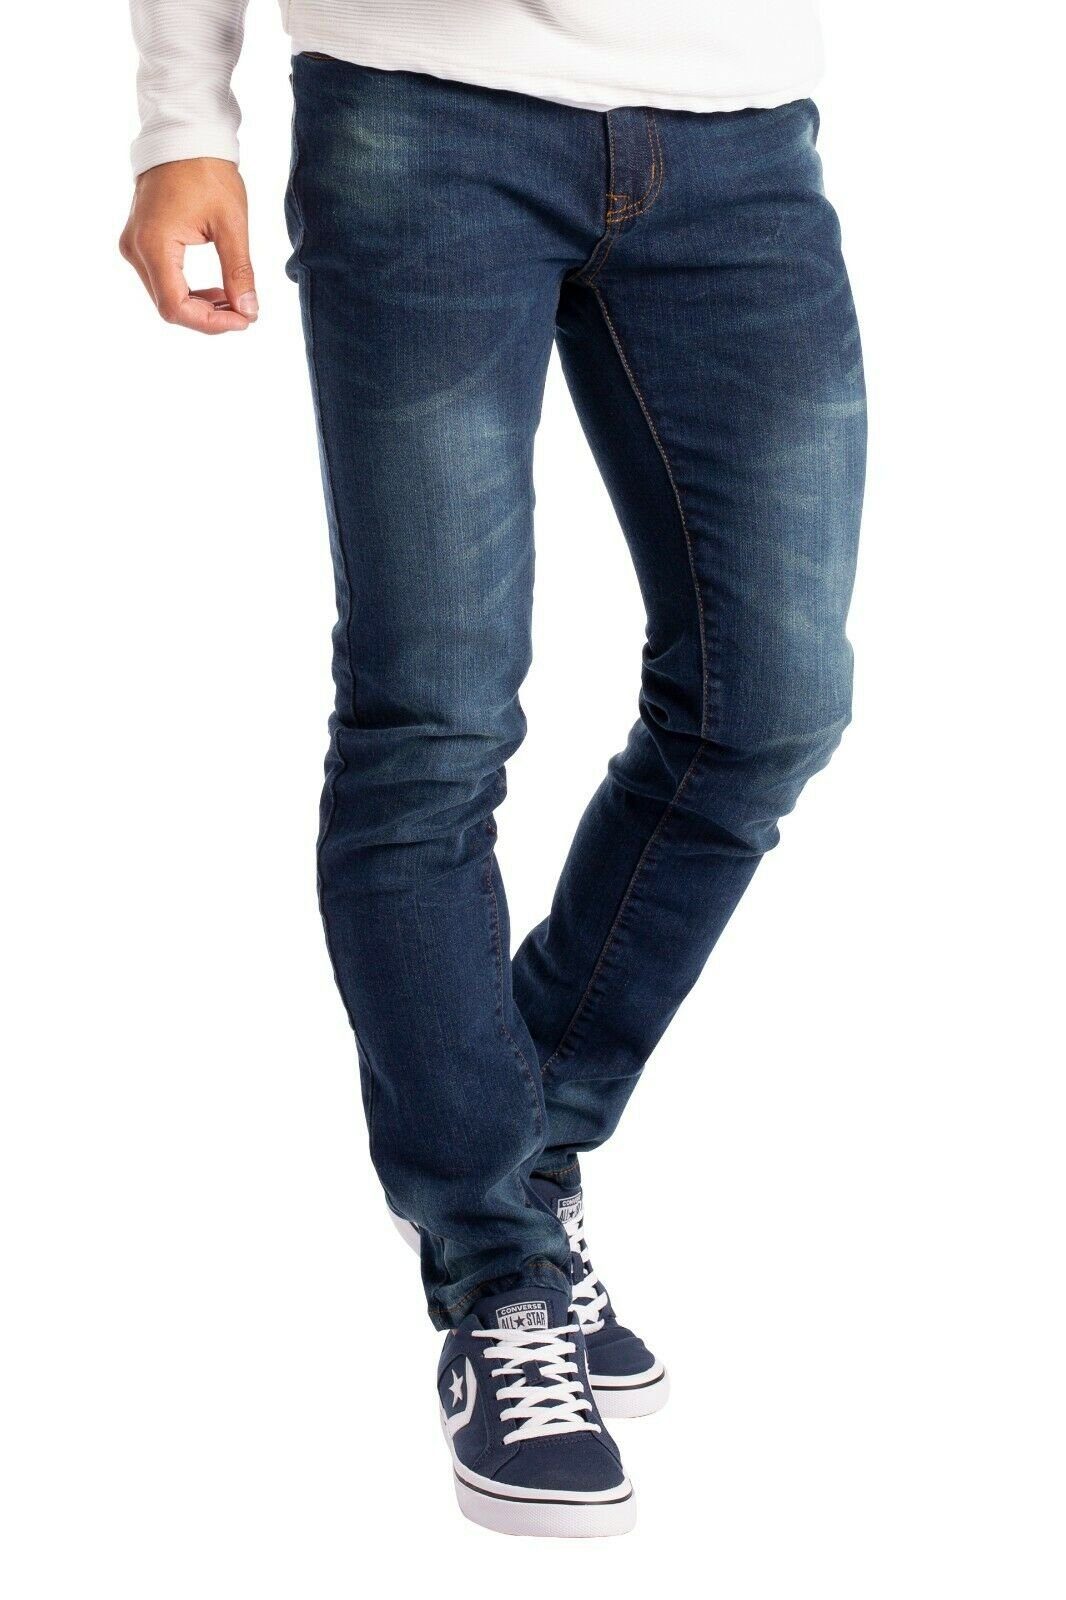 BlauerHafen Slim-fit-Jeans Herren Slim Fit Jeanshose Stretch Designer Hose Super Flex Denim Pants 2 Seitentaschen, 2 Gesäßtaschen und 1 vordere Münztasche Indigo